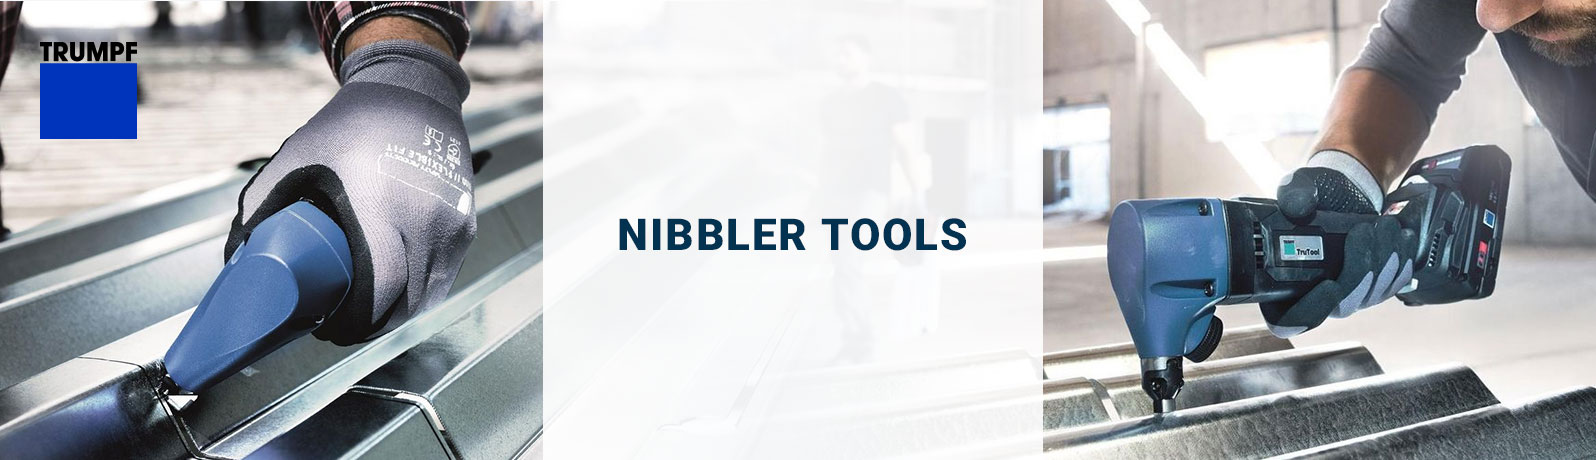 Trumpf Nibbler Tools